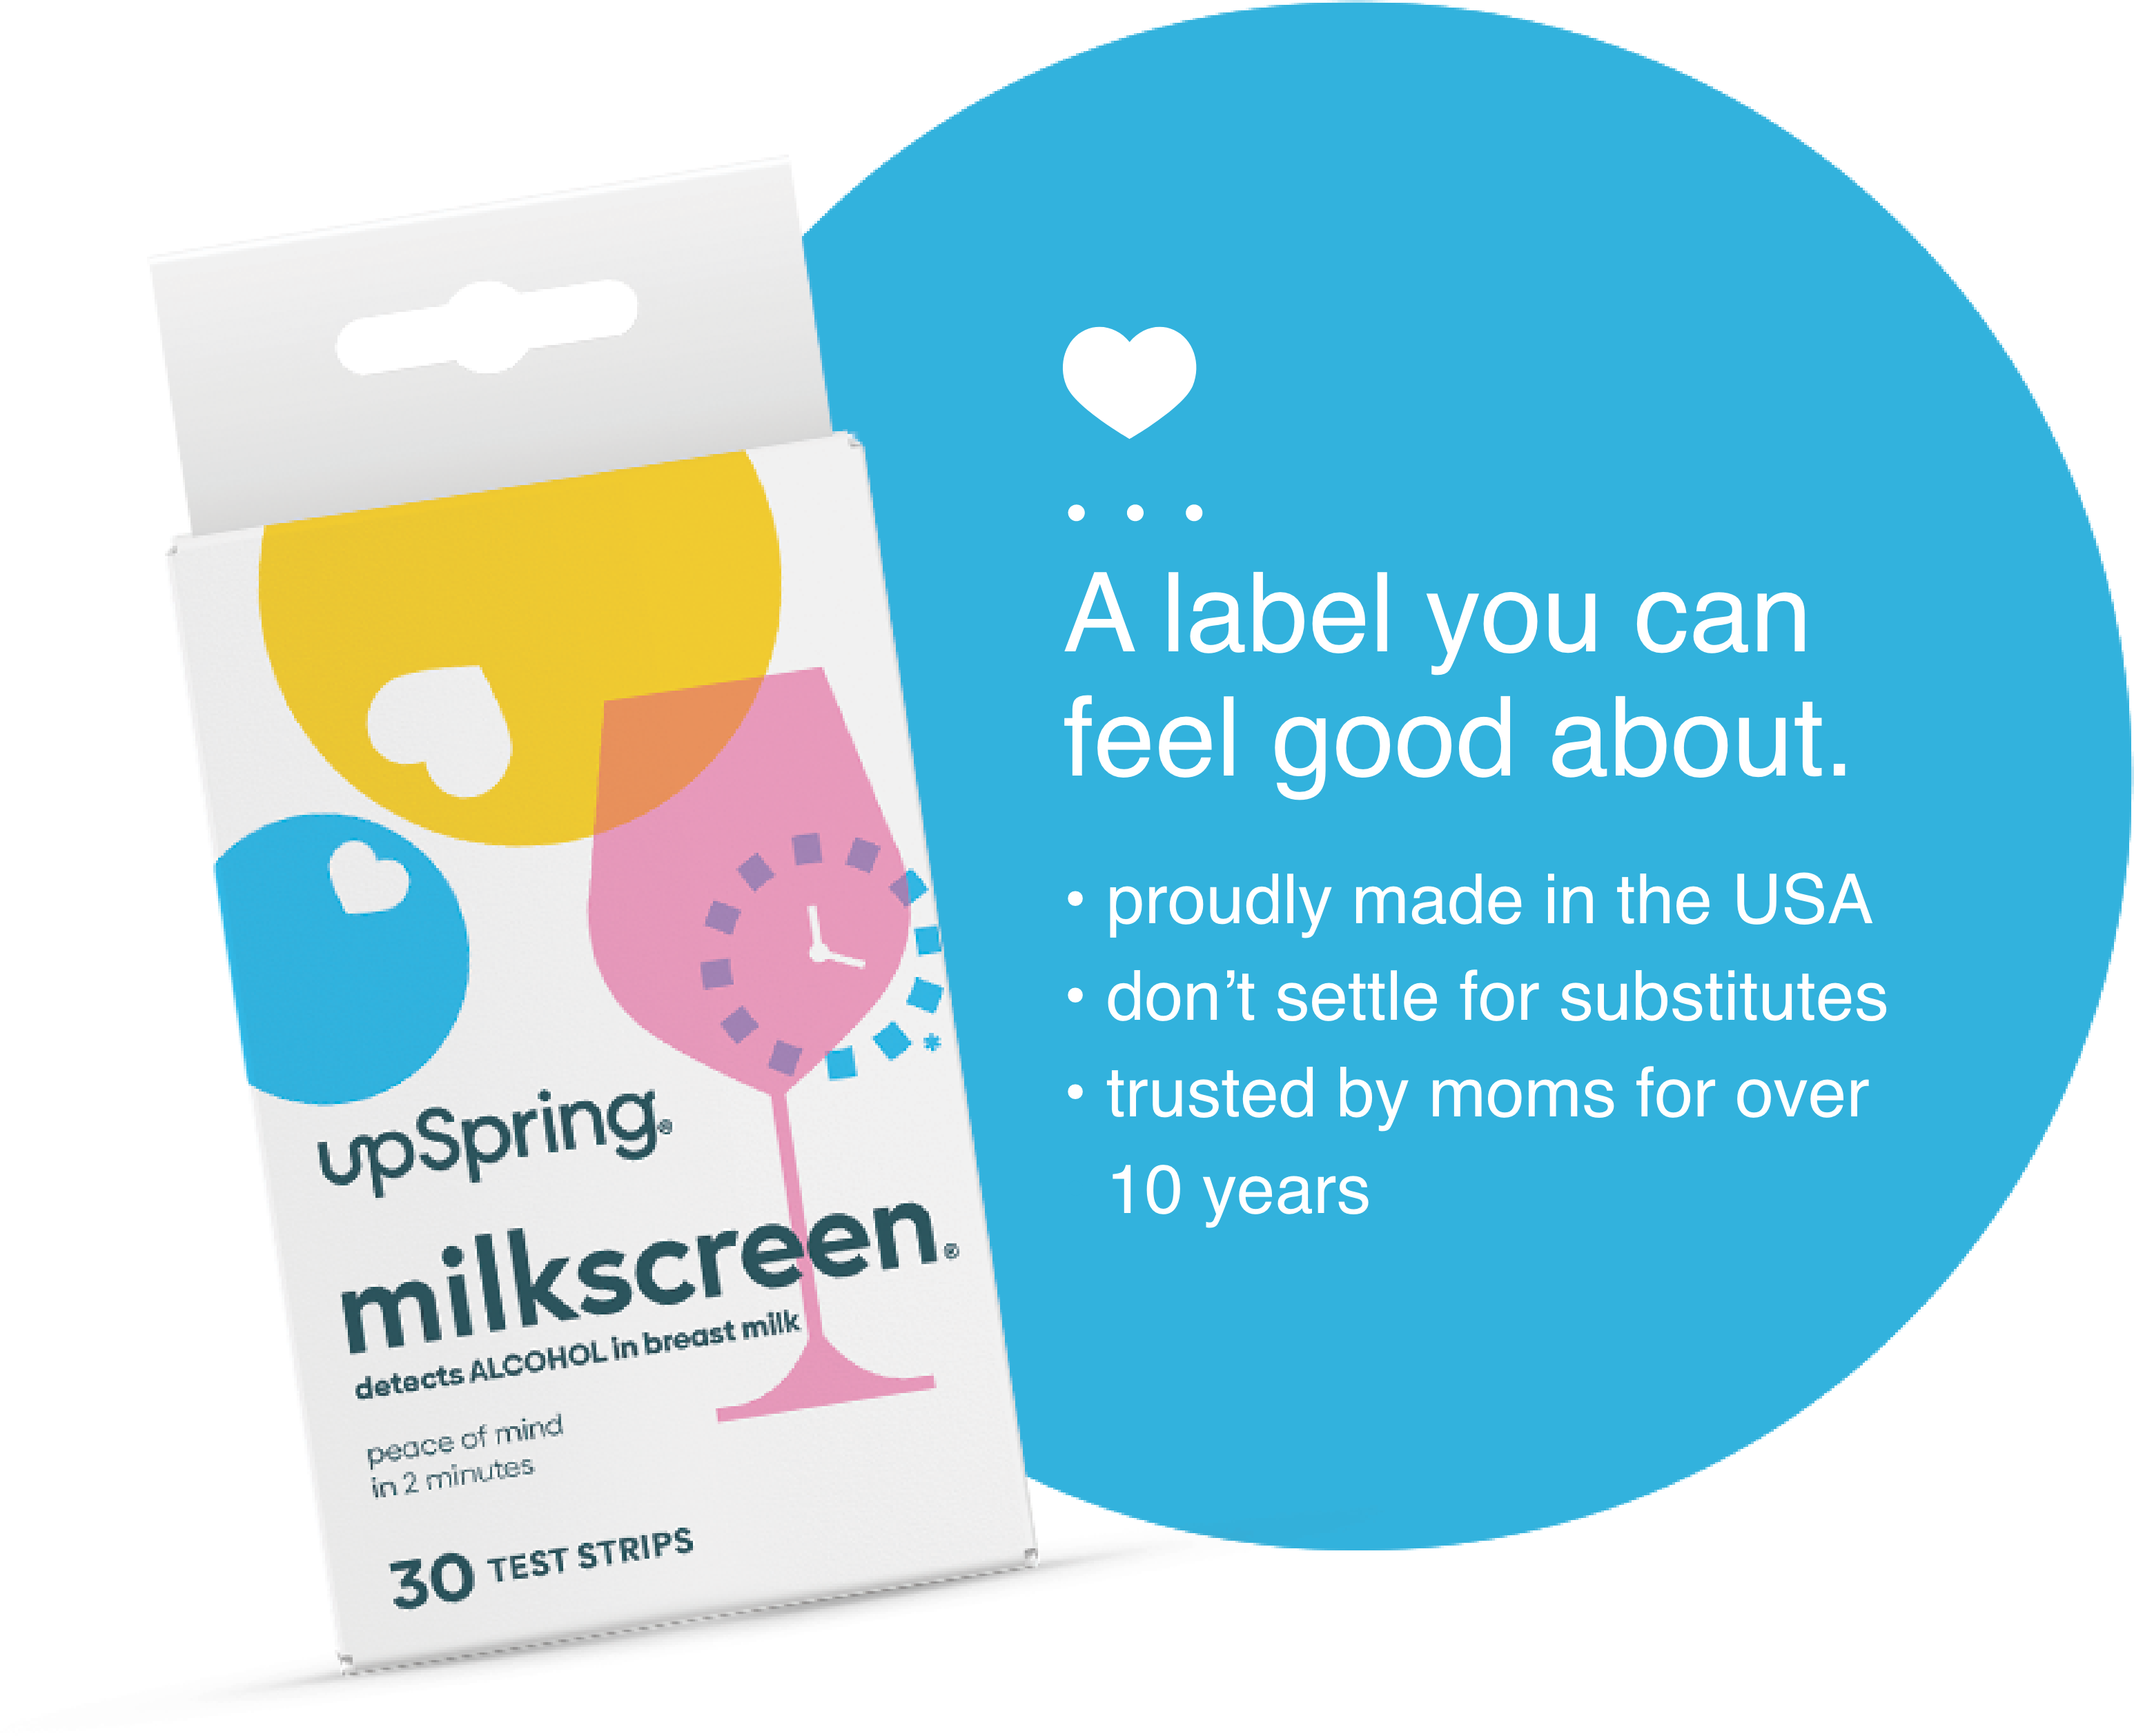 UpSpring Milkscreen Test for Alcohol in Breastmilk